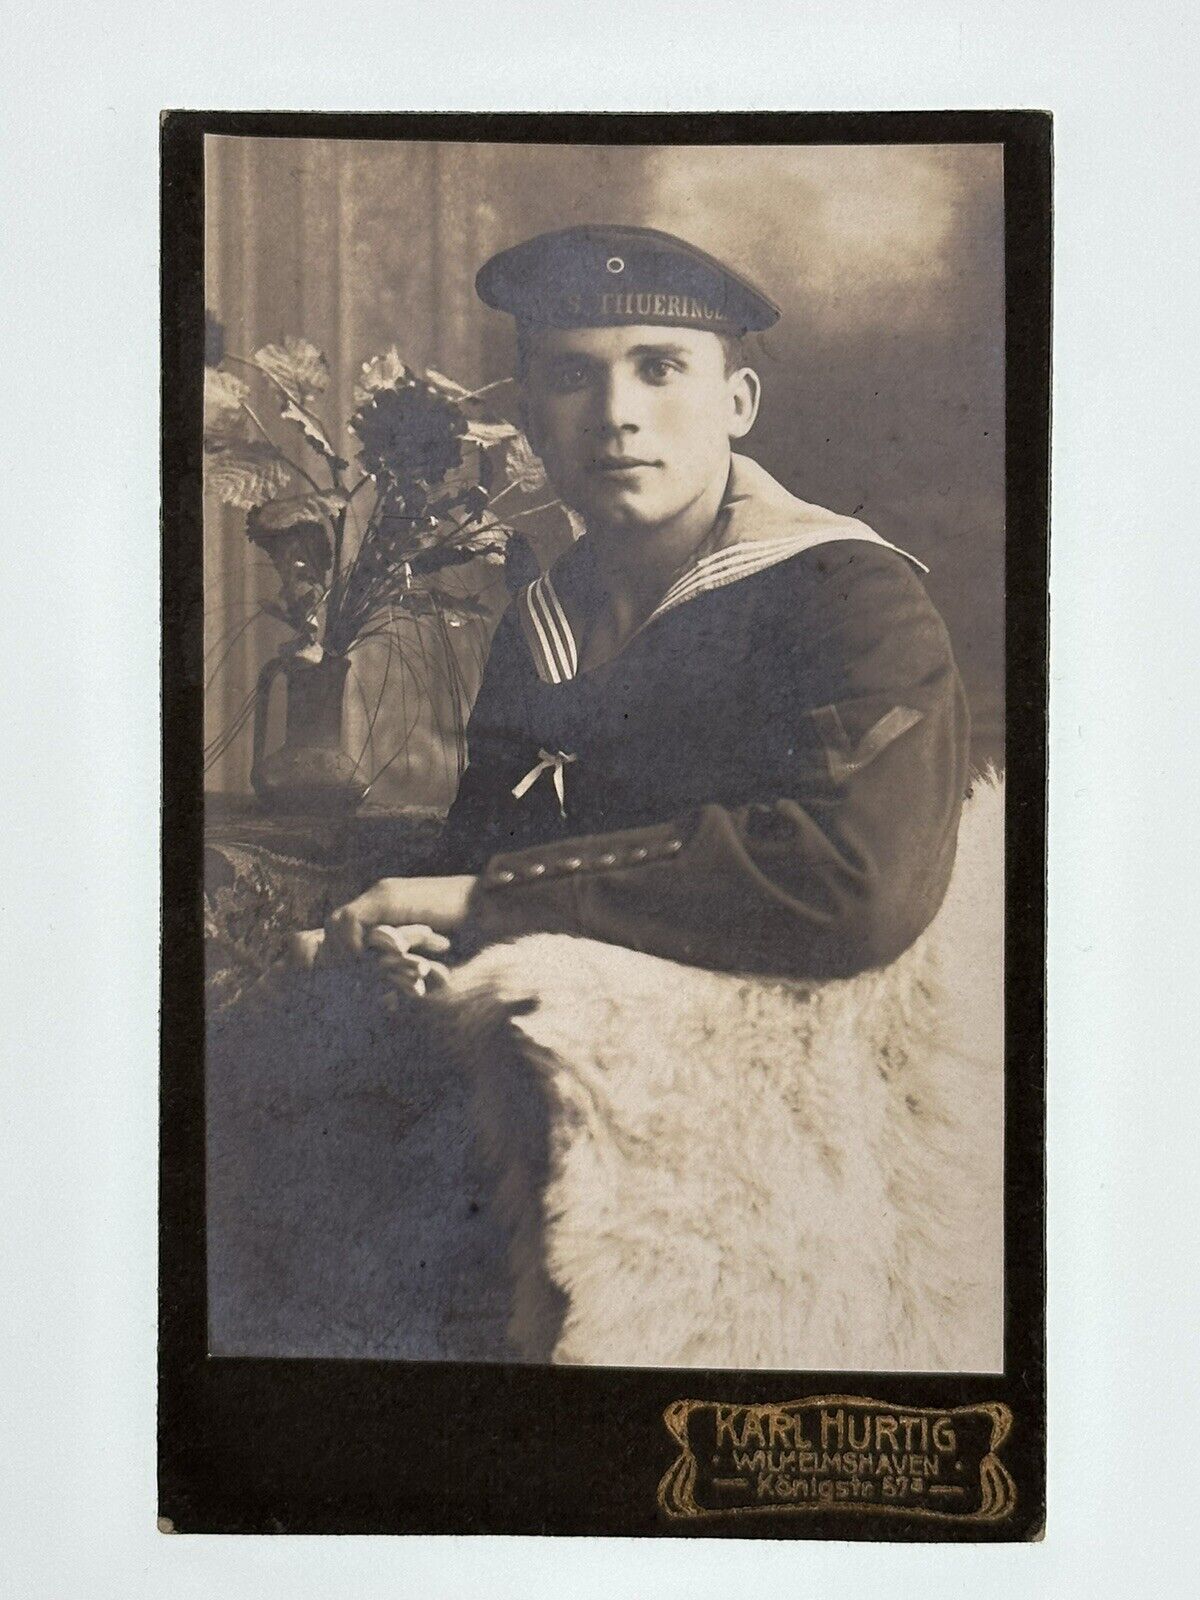 SMS Thüringen Young German Sailor Studio Photograph Portrait  WWI 1913 V*